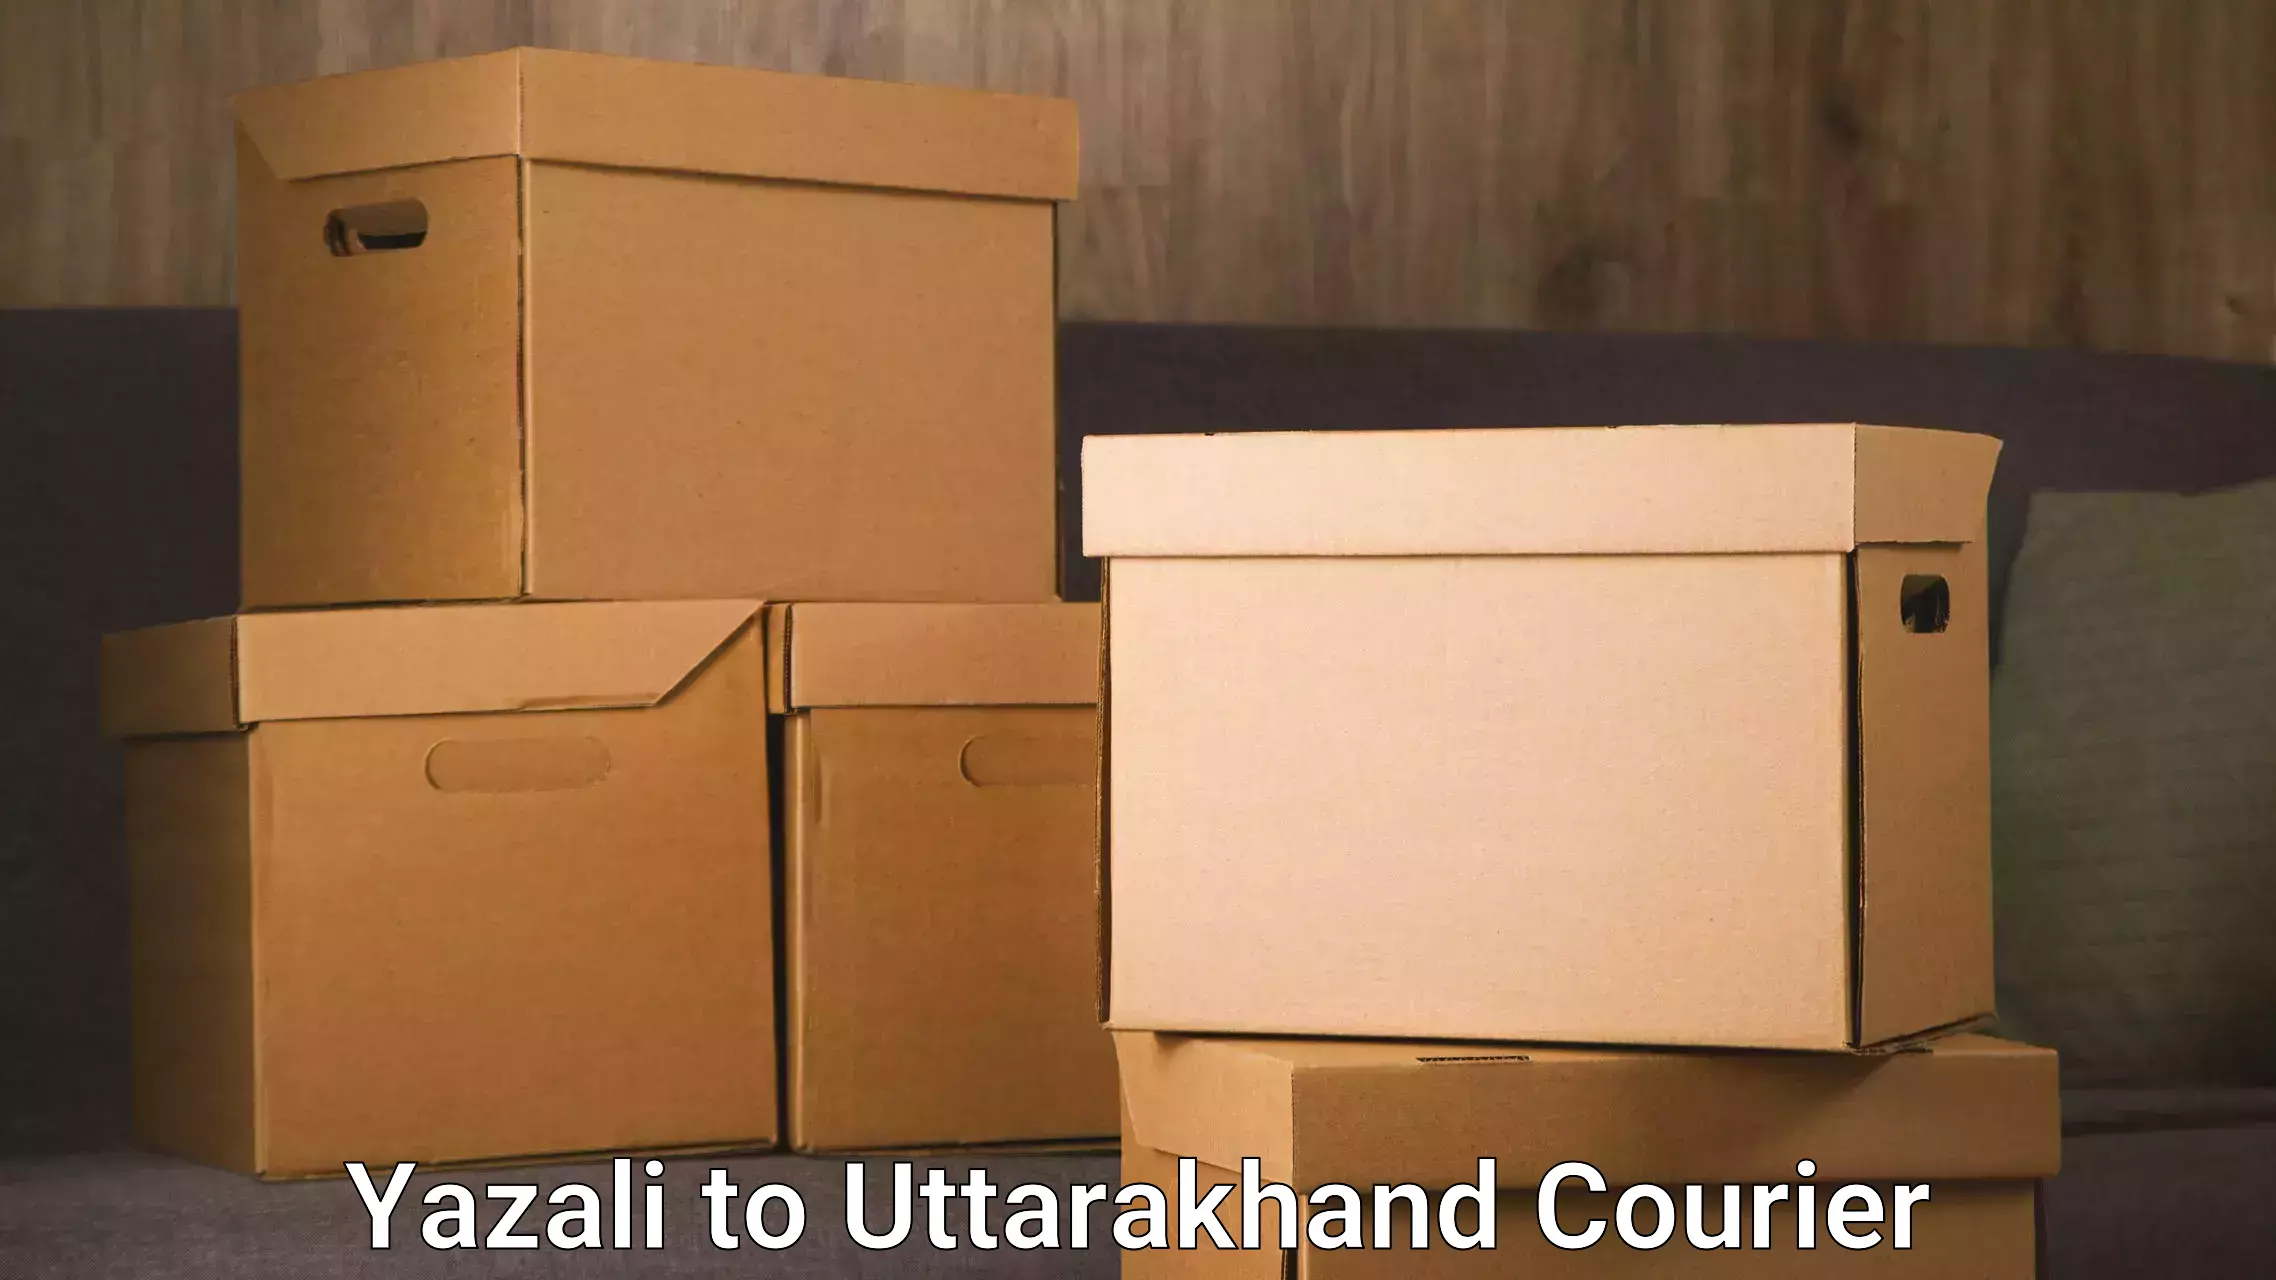 Urgent courier needs Yazali to Uttarakhand